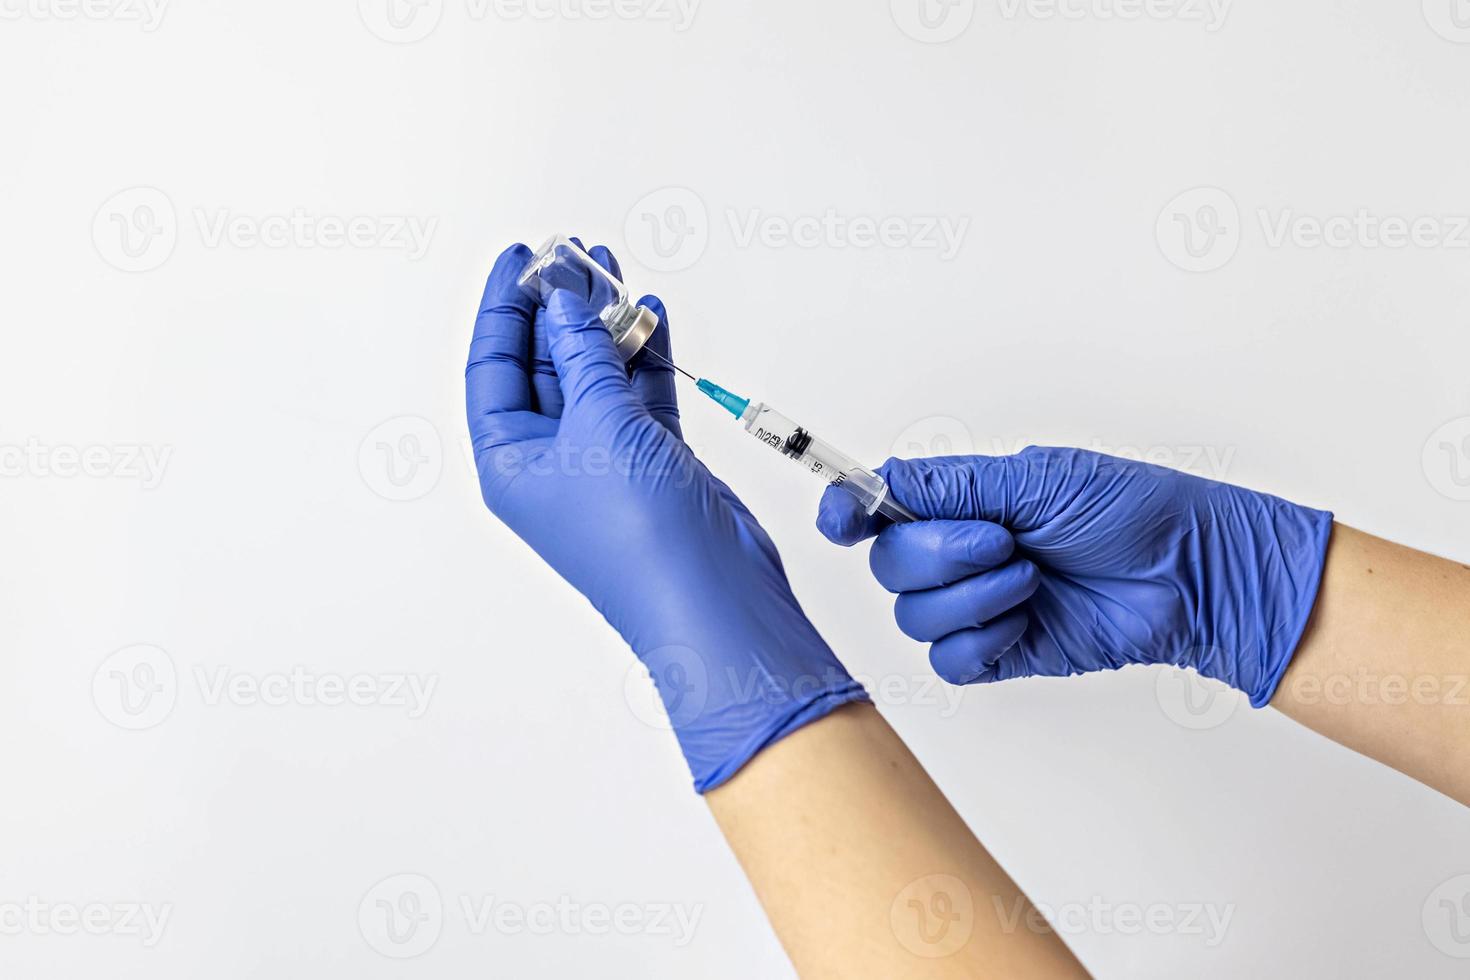 un operatore medico in guanti medici aspira una dose di vaccino contro il coronavirus in una siringa. il concetto di vaccinazione, immunizzazione, prevenzione delle persone da covid-19 foto